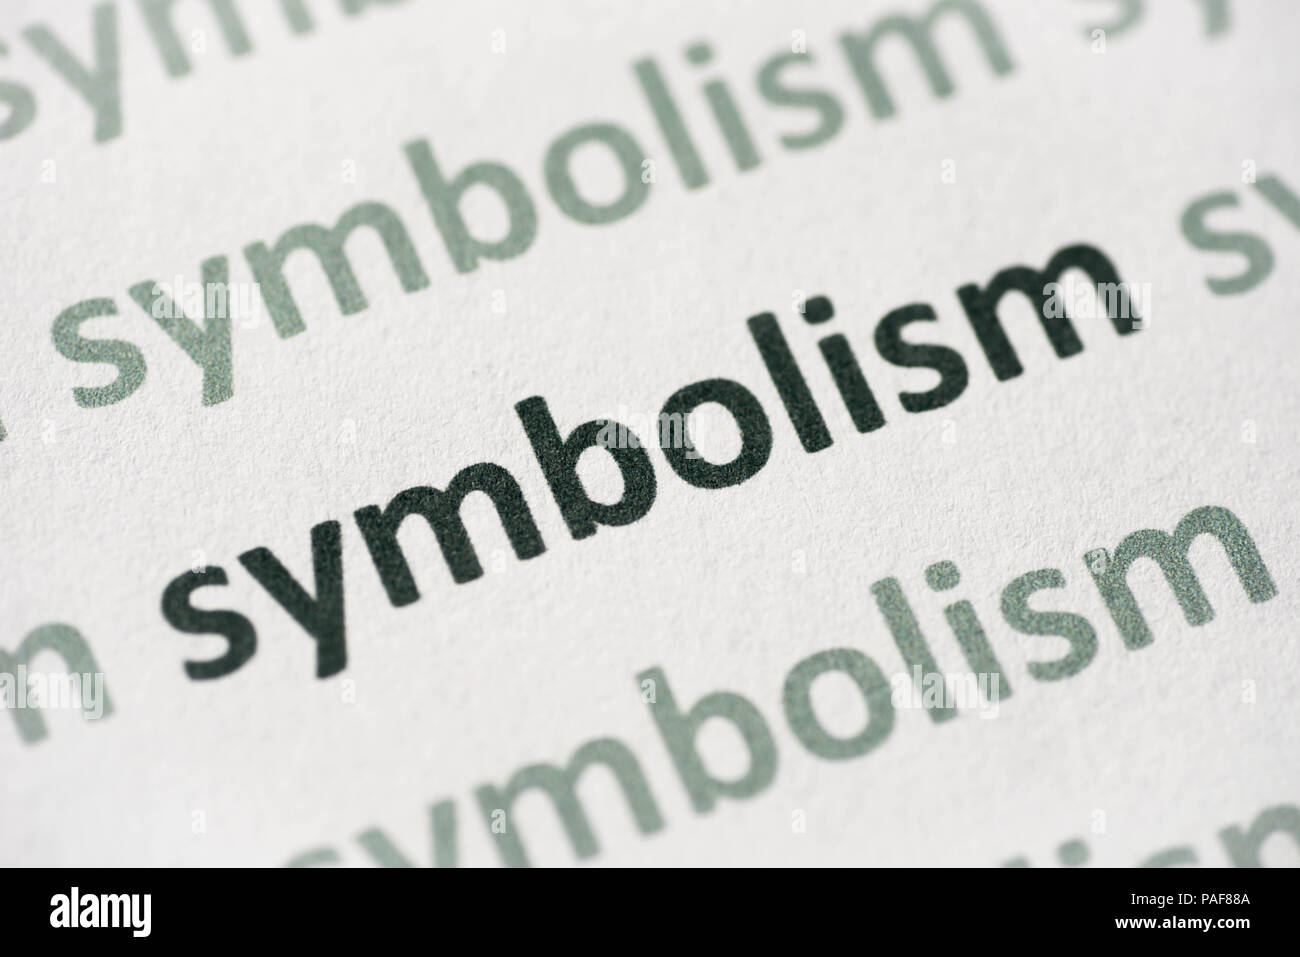 Il simbolismo di parola stampata su carta bianca macro Foto Stock